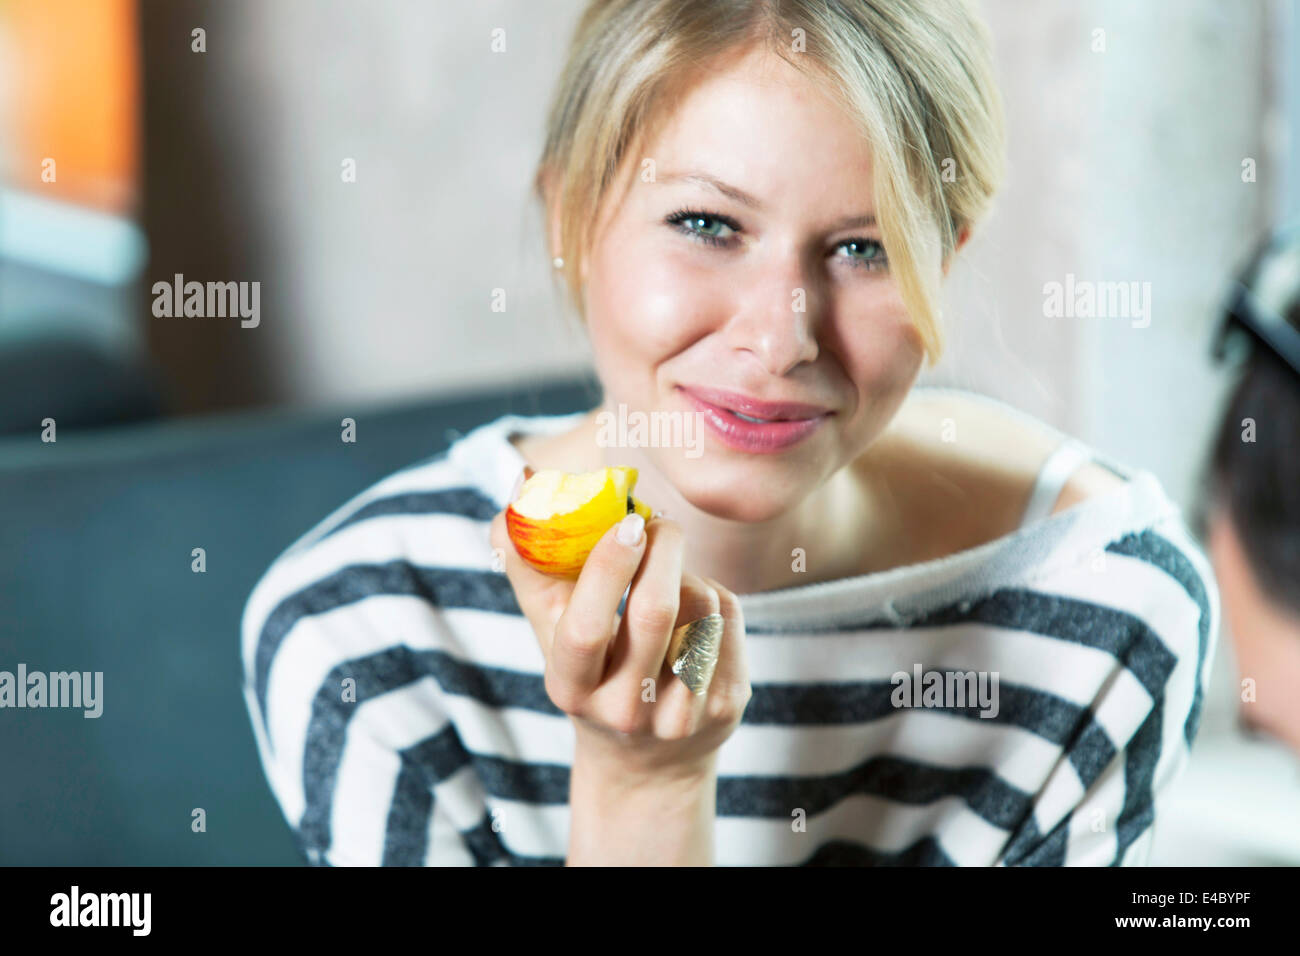 Frau mit blonden Haaren einen Apfel essen Stockfoto